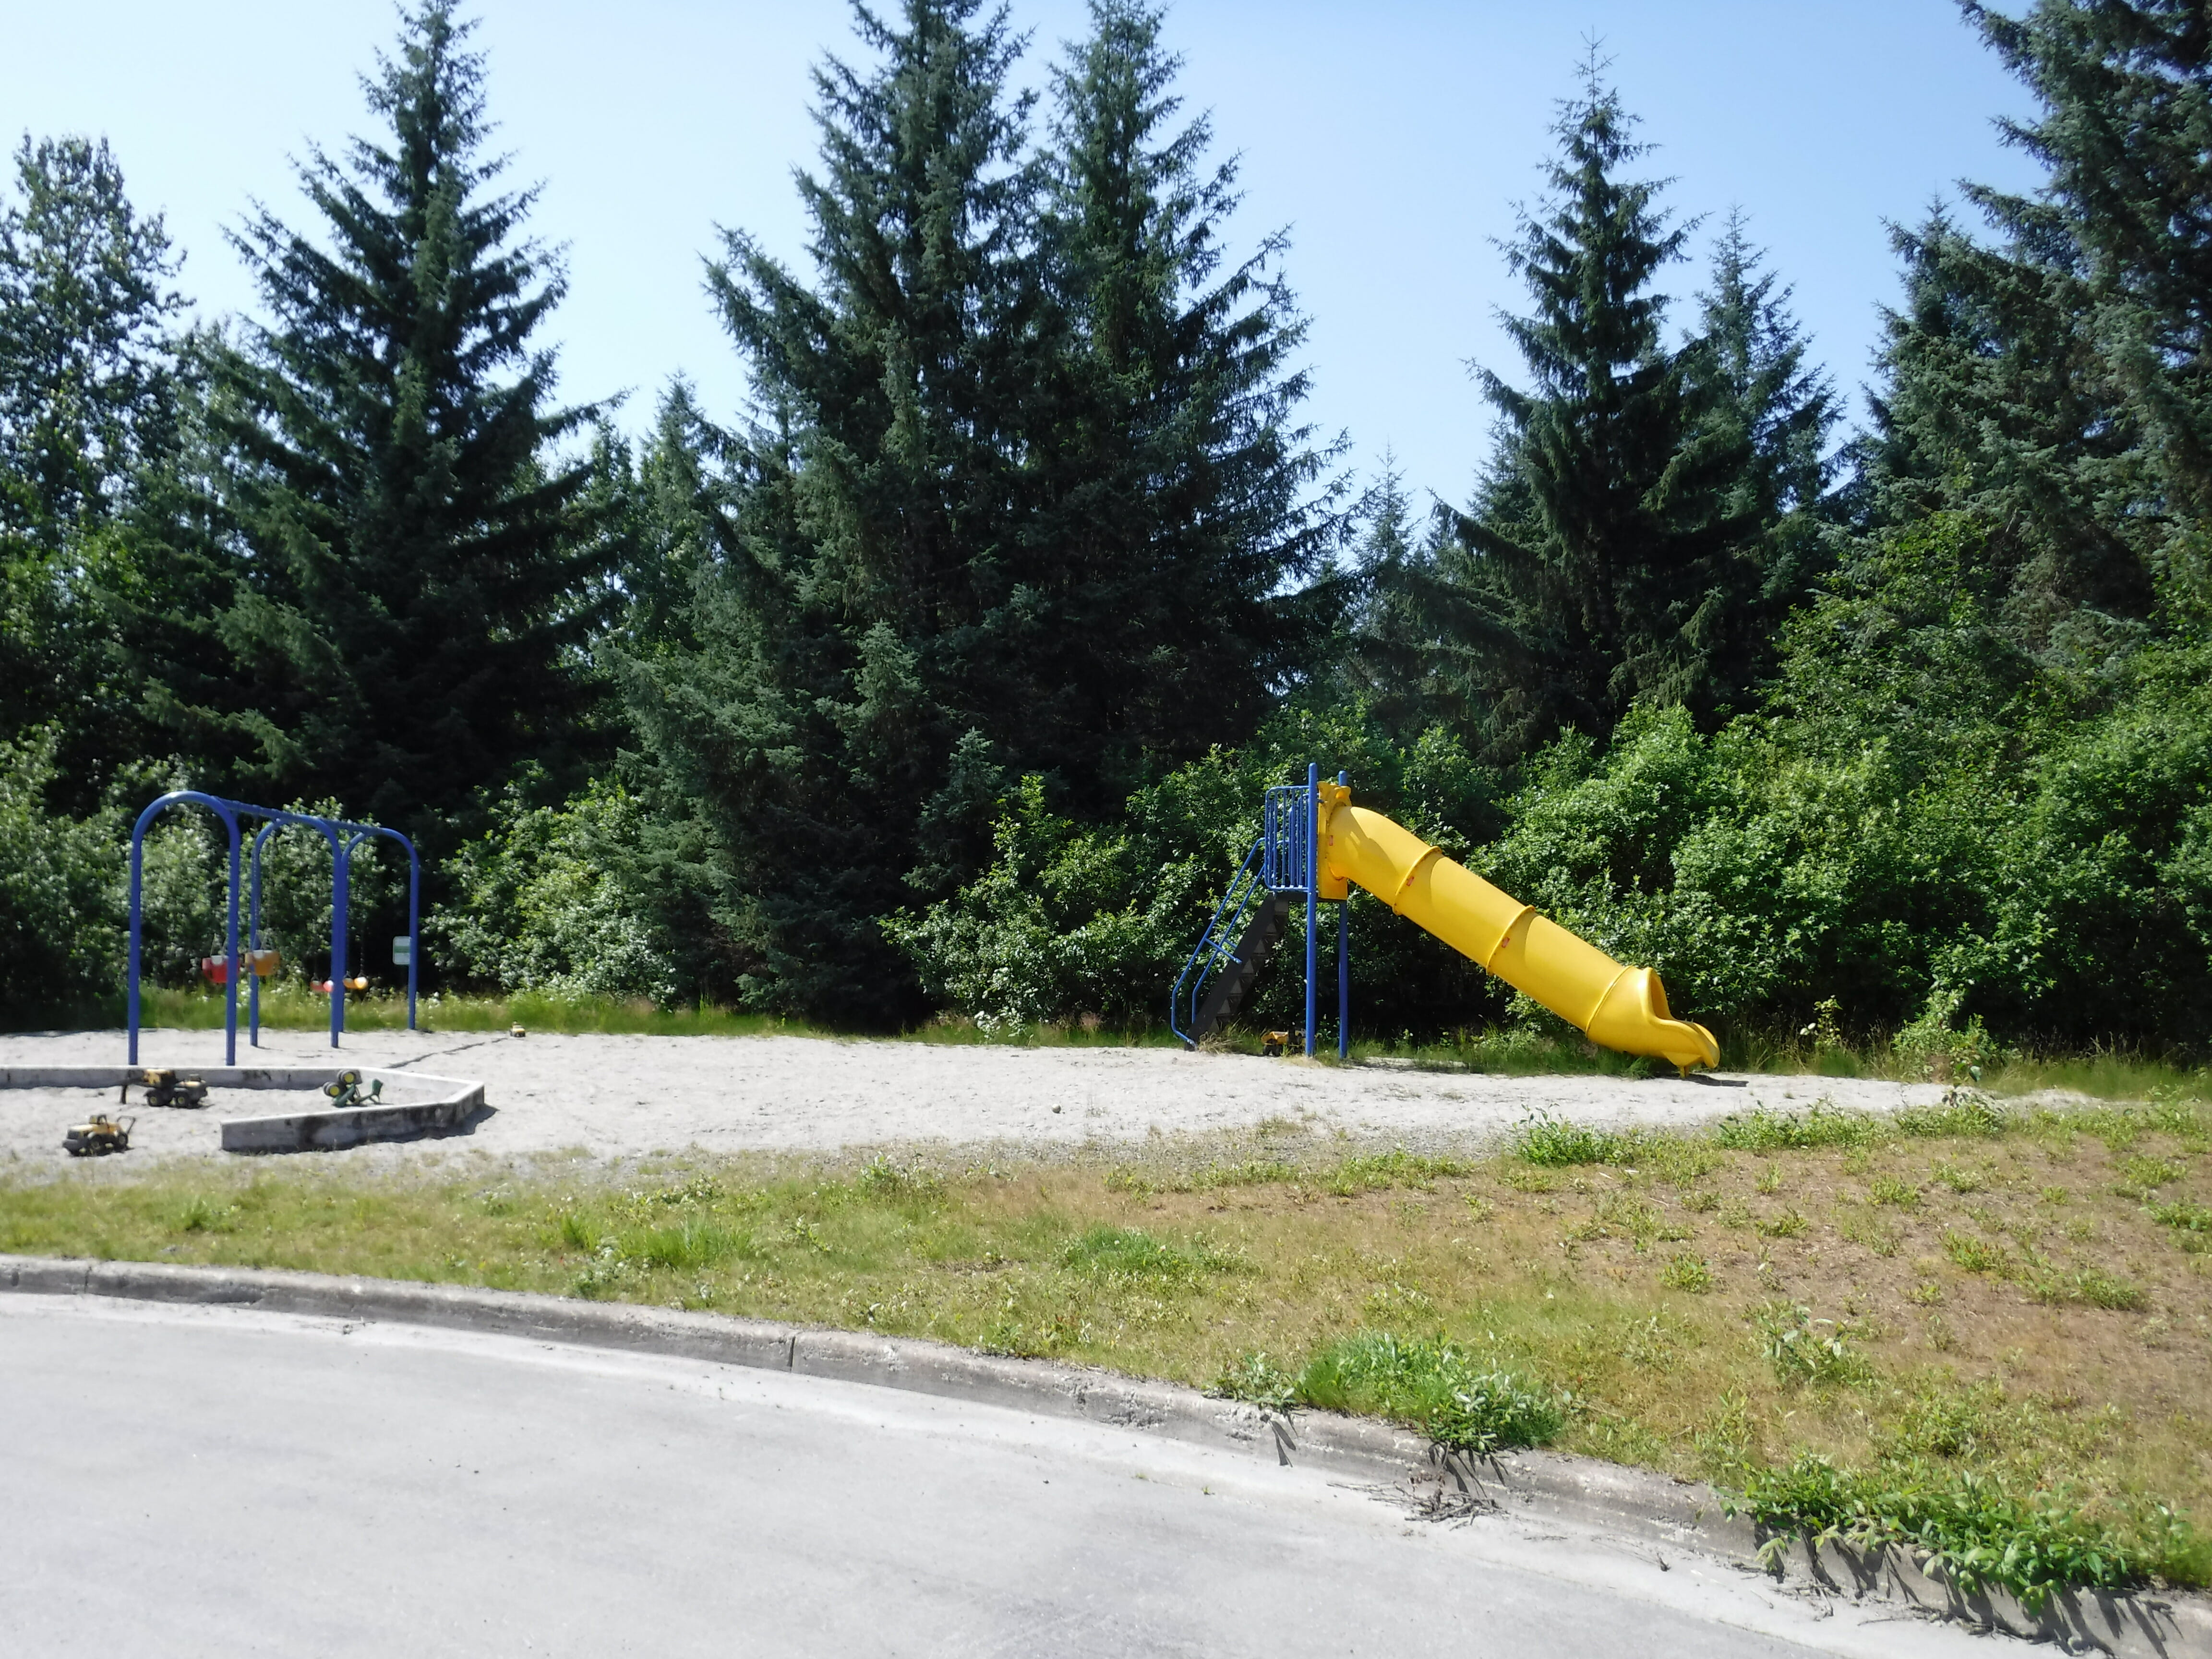 Slide and swings at Steelhead Park